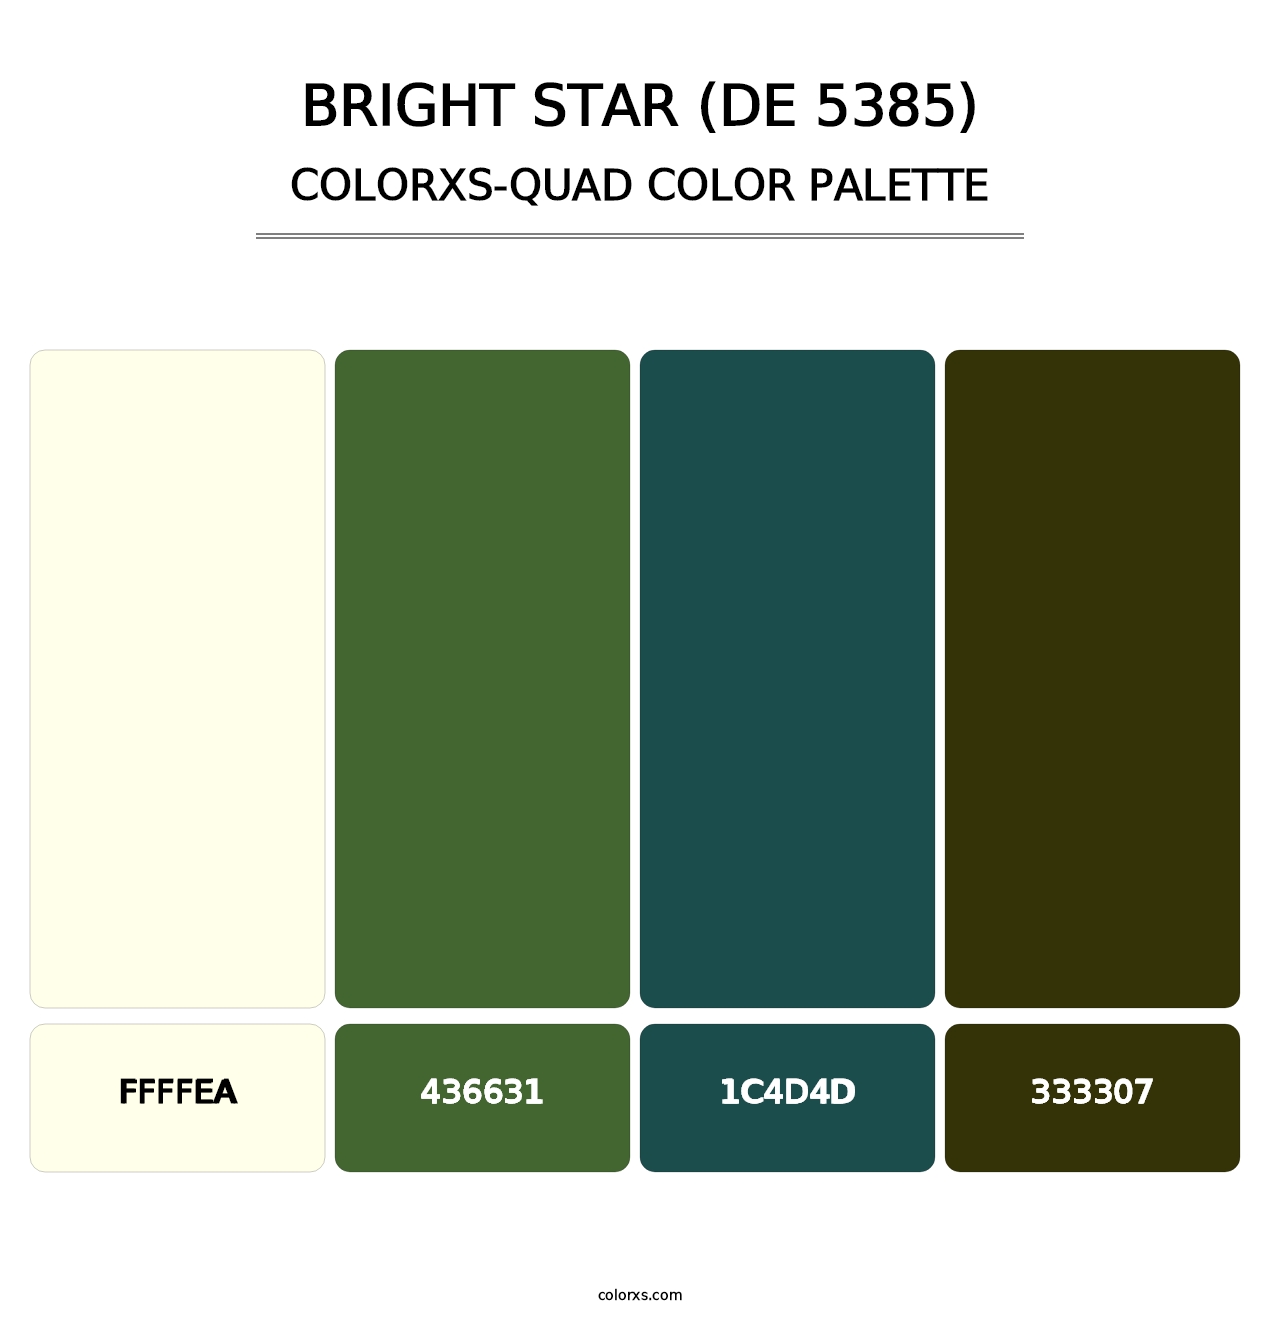 Bright Star (DE 5385) - Colorxs Quad Palette